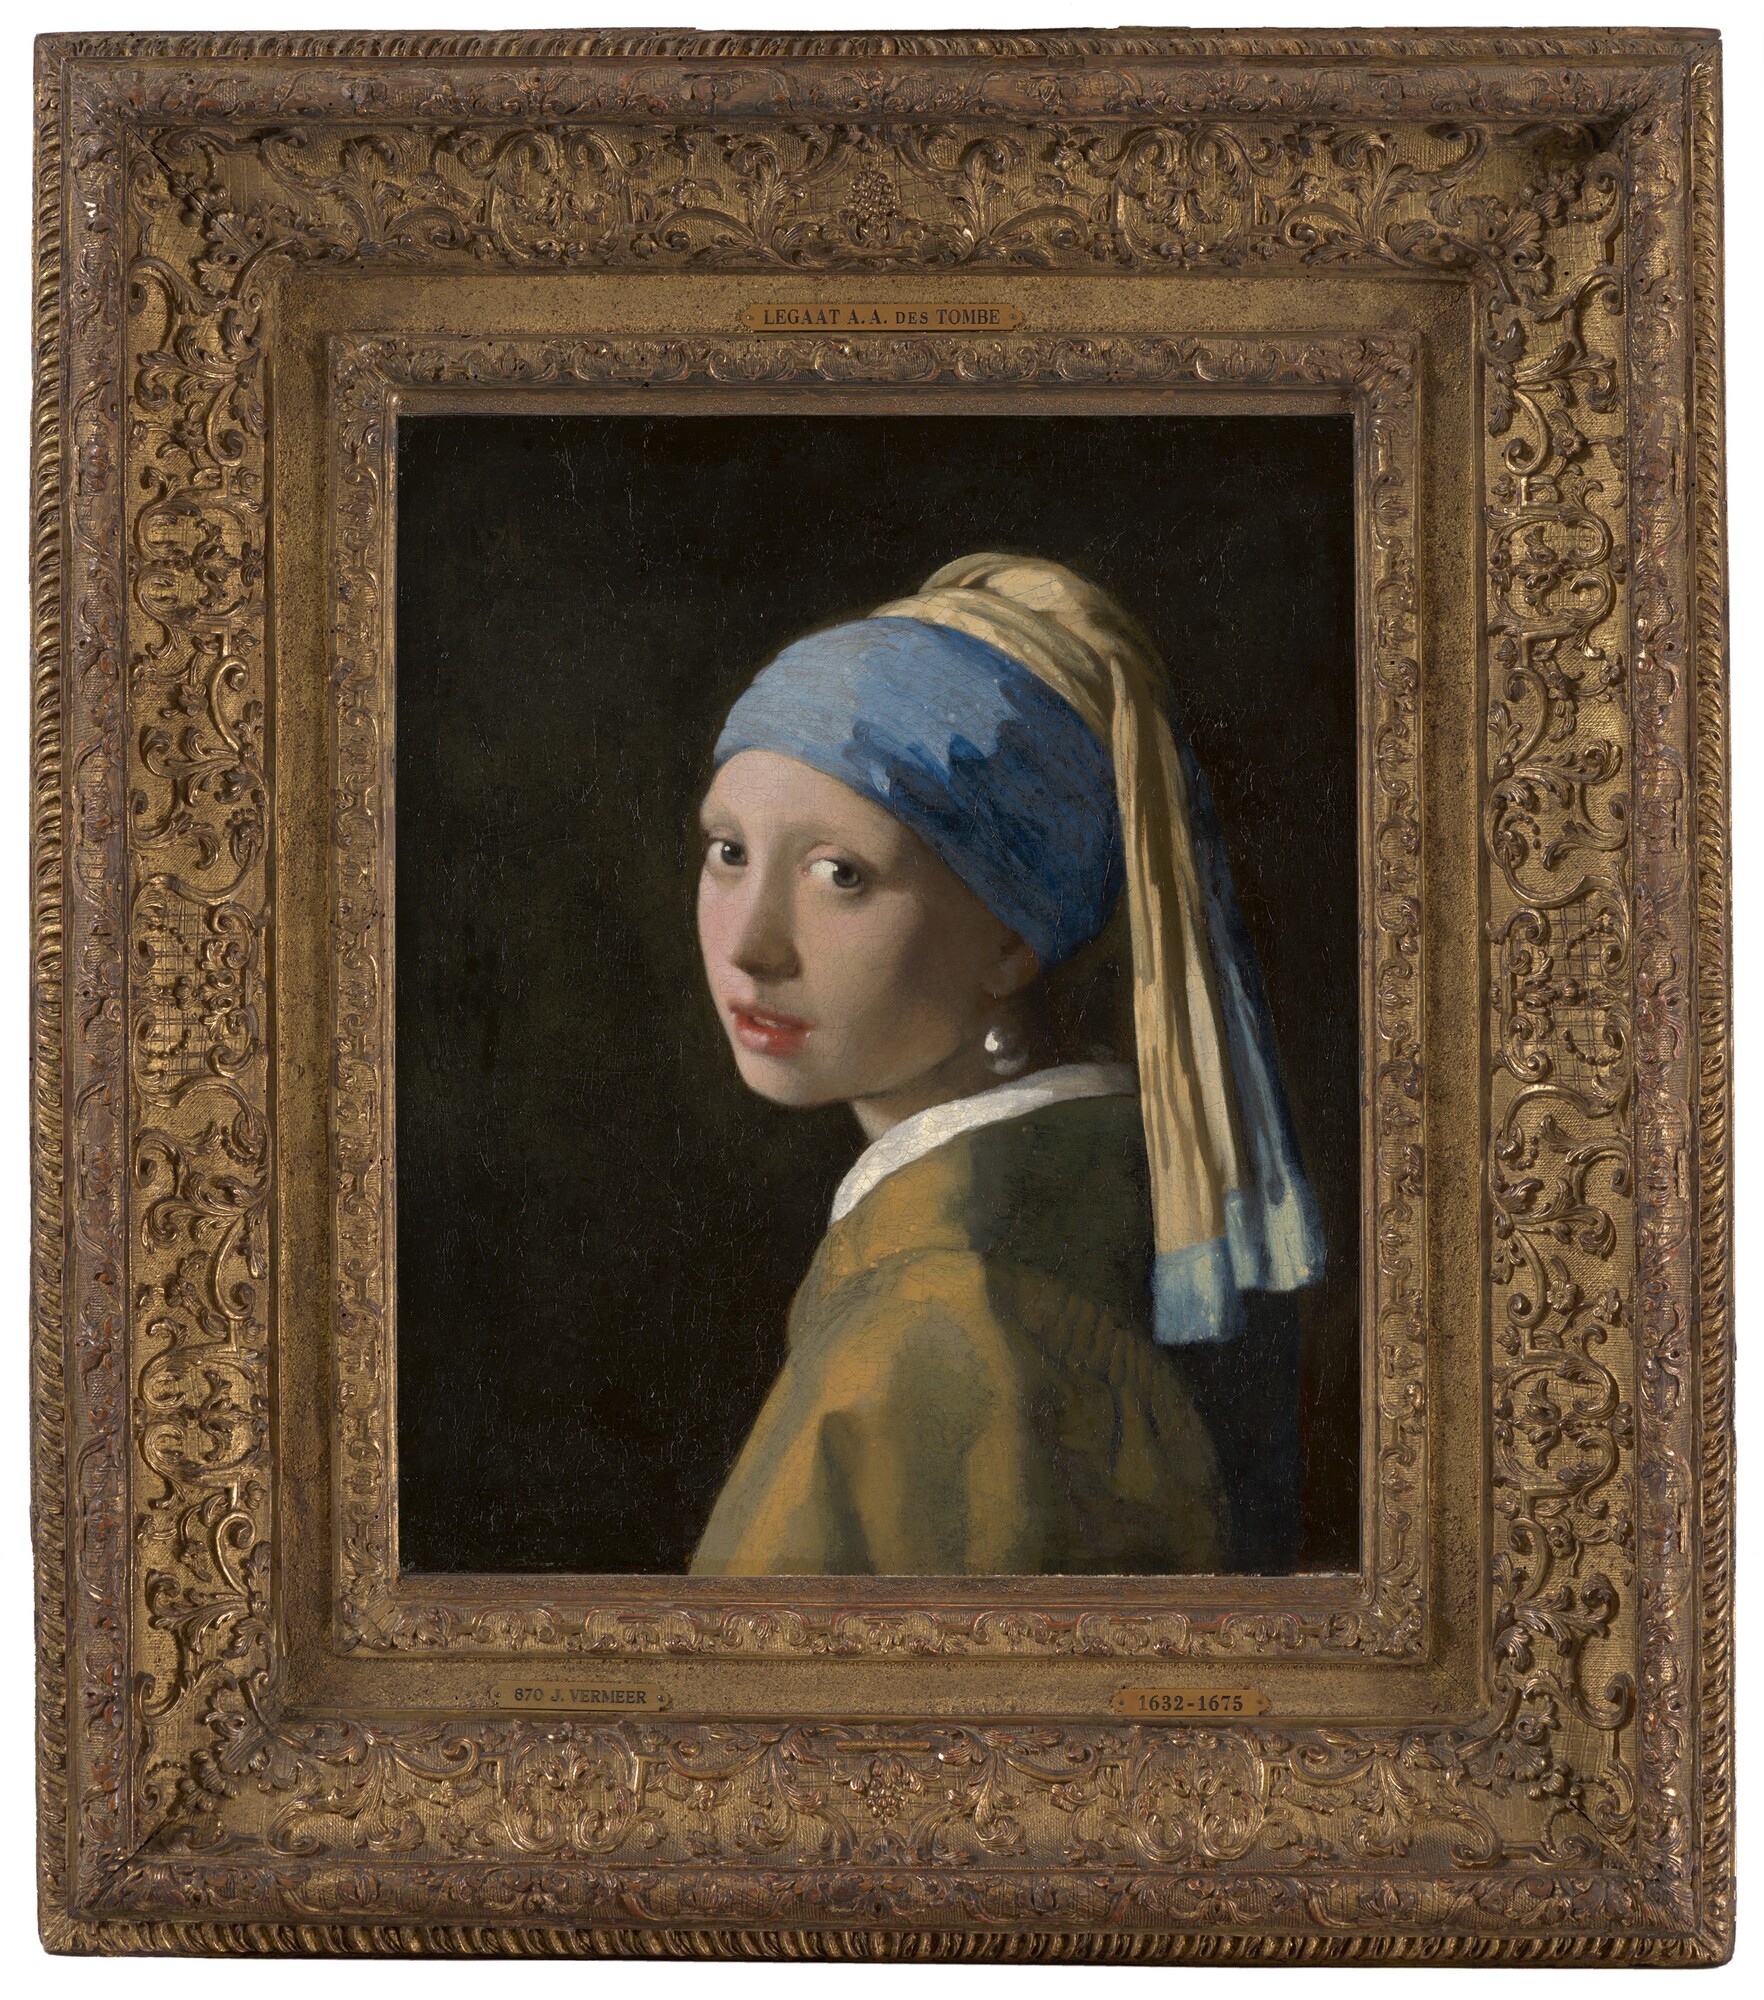 Meisje met de parel - Johannes Vermeer, c. 1665